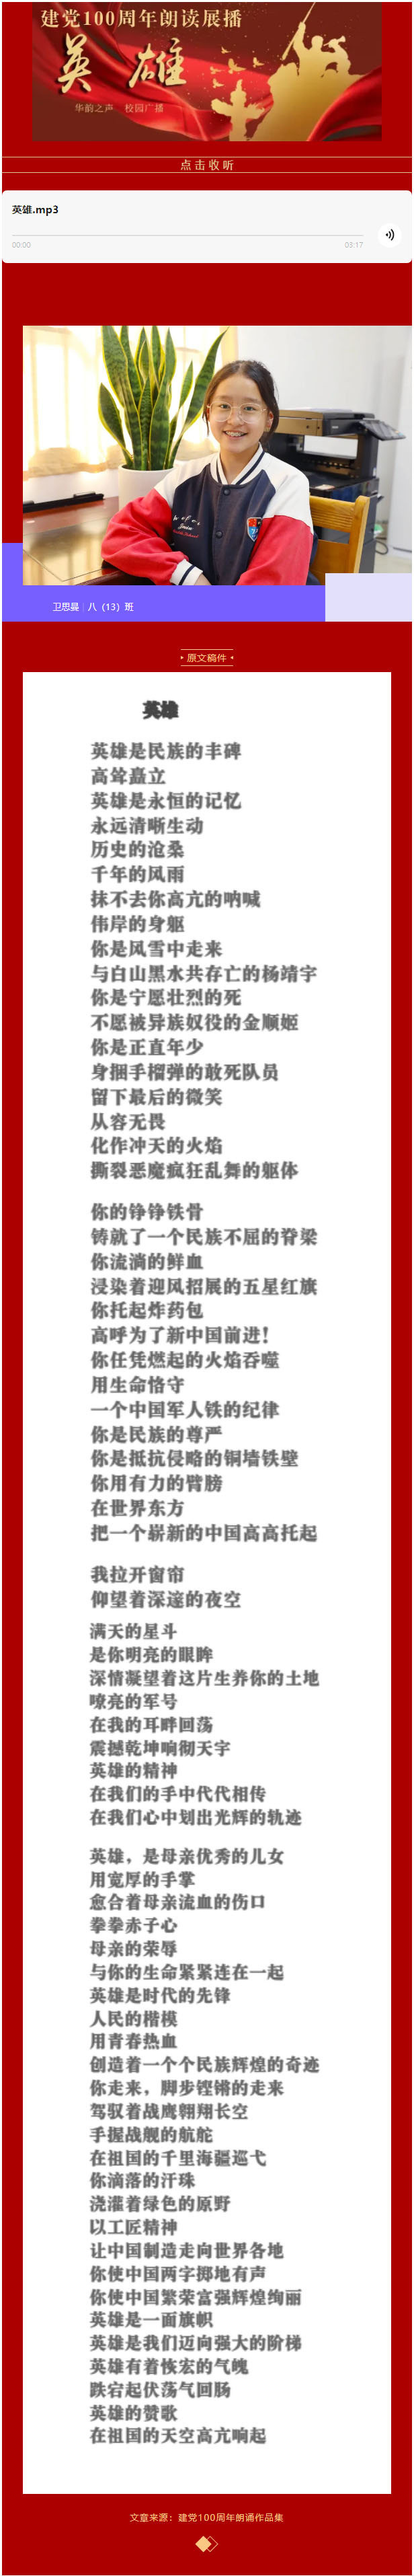 建党100周年朗读展播：《英雄》｜锦绣 · 团委 华韵之声校园广播